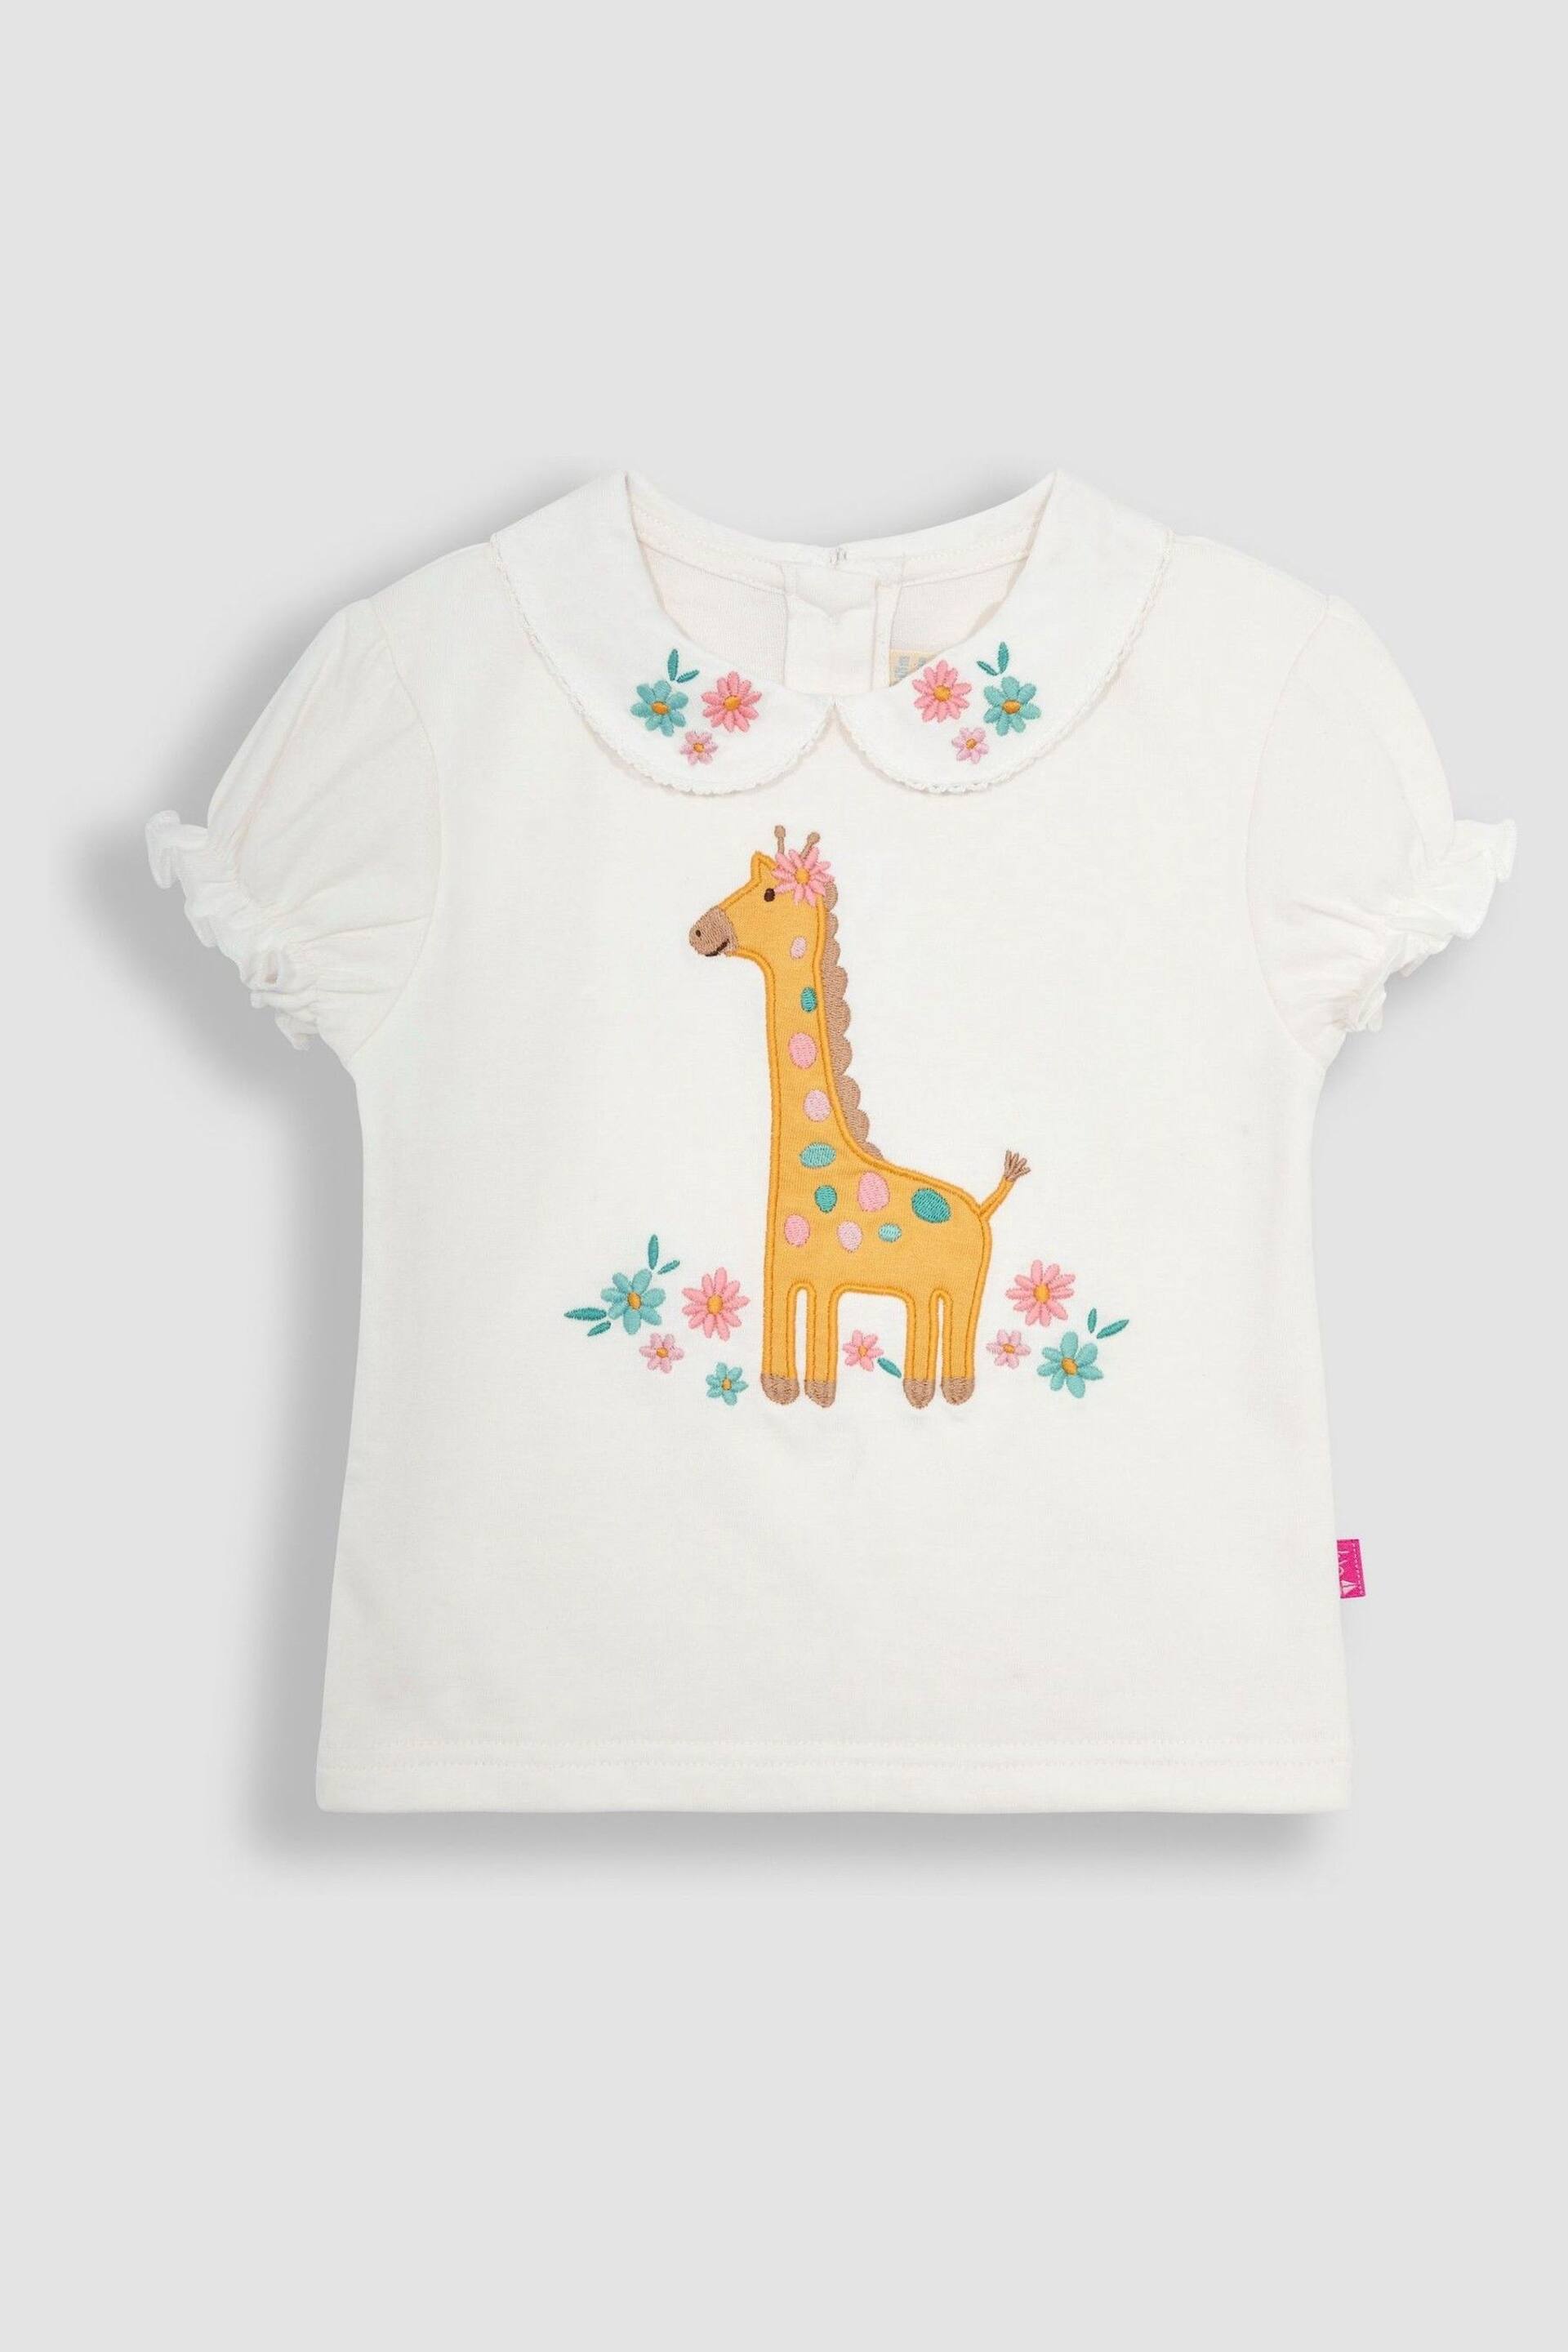 JoJo Maman Bébé Cream 2-Piece Giraffe Applique T-Shirt & Leggings Set - Image 2 of 4